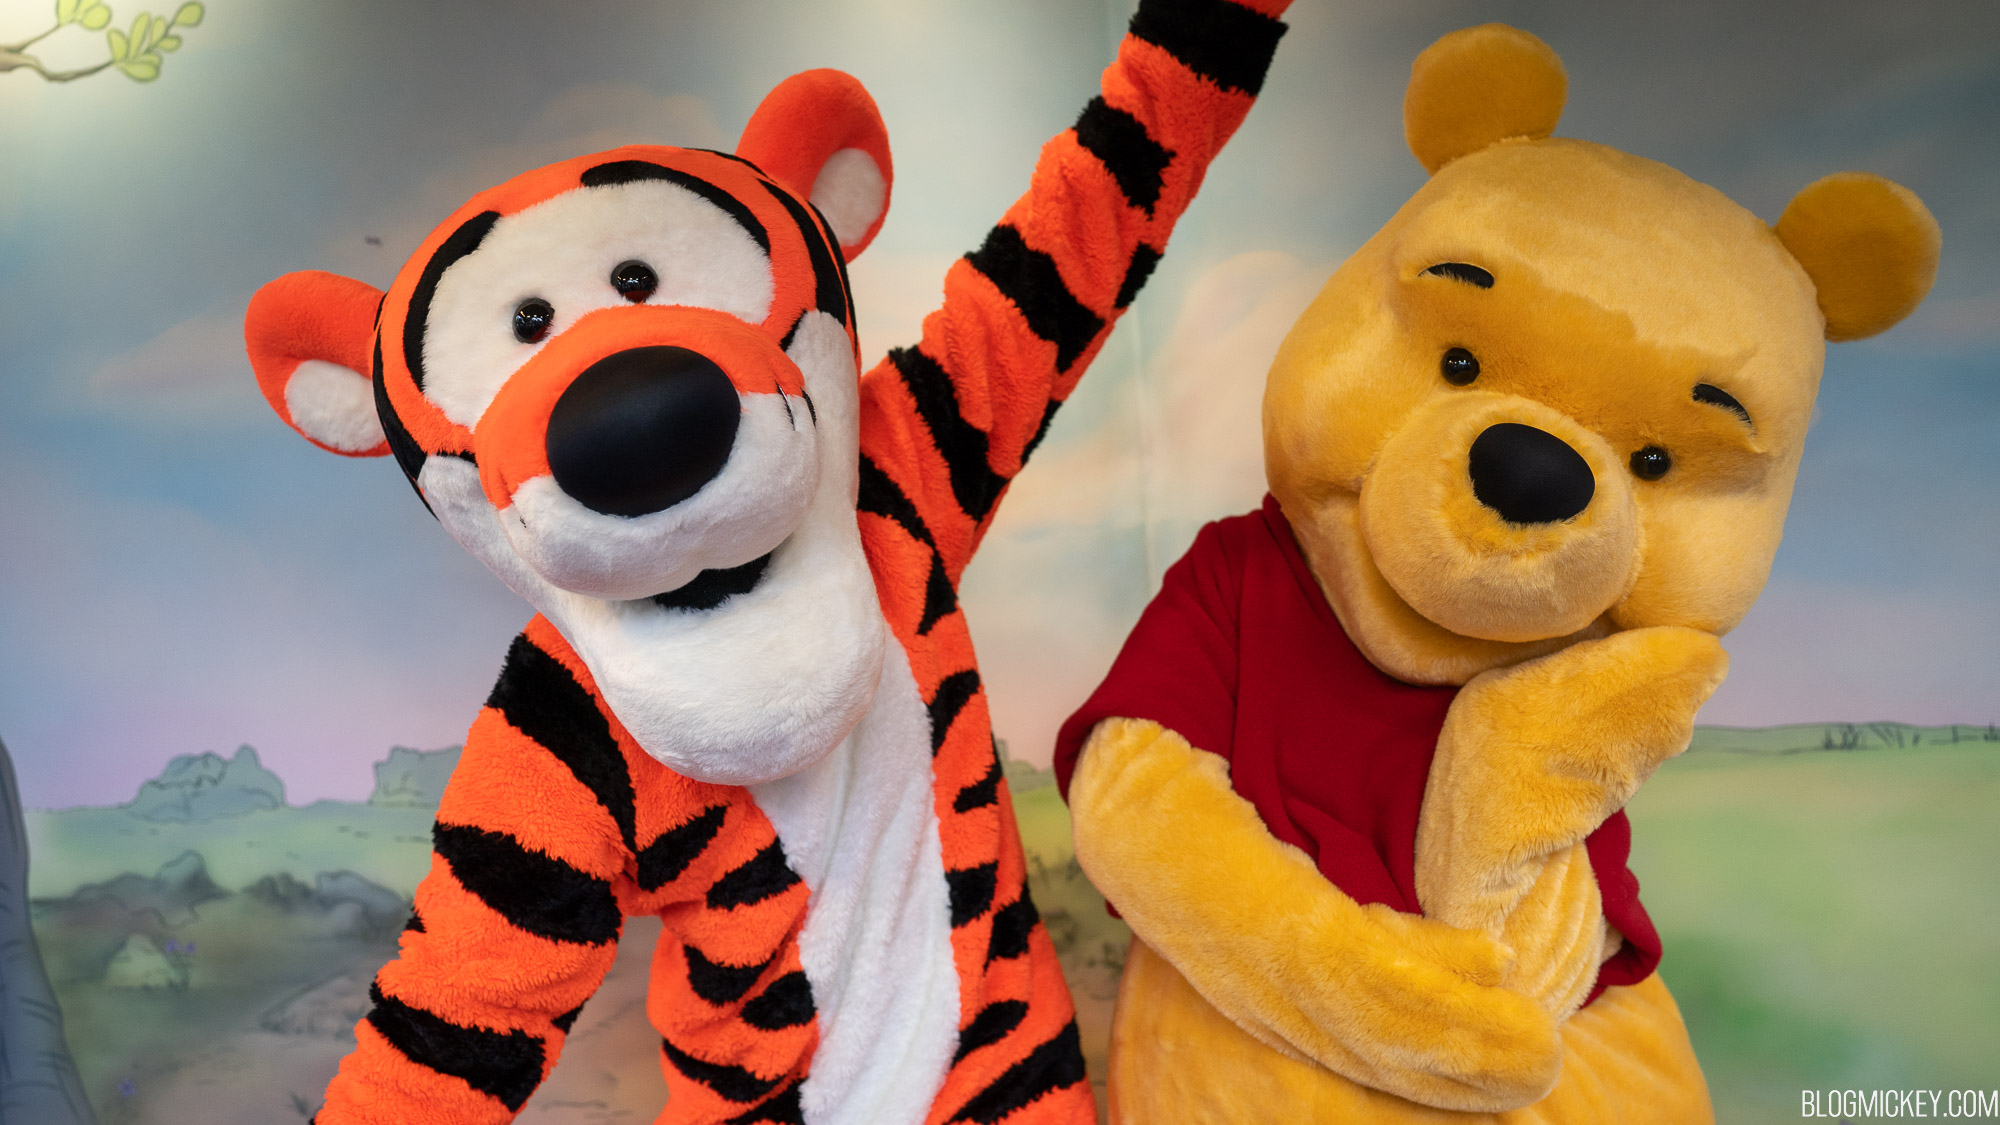 Winnie the Pooh & Friends Meet and Greet Returns to Magic Kingdom